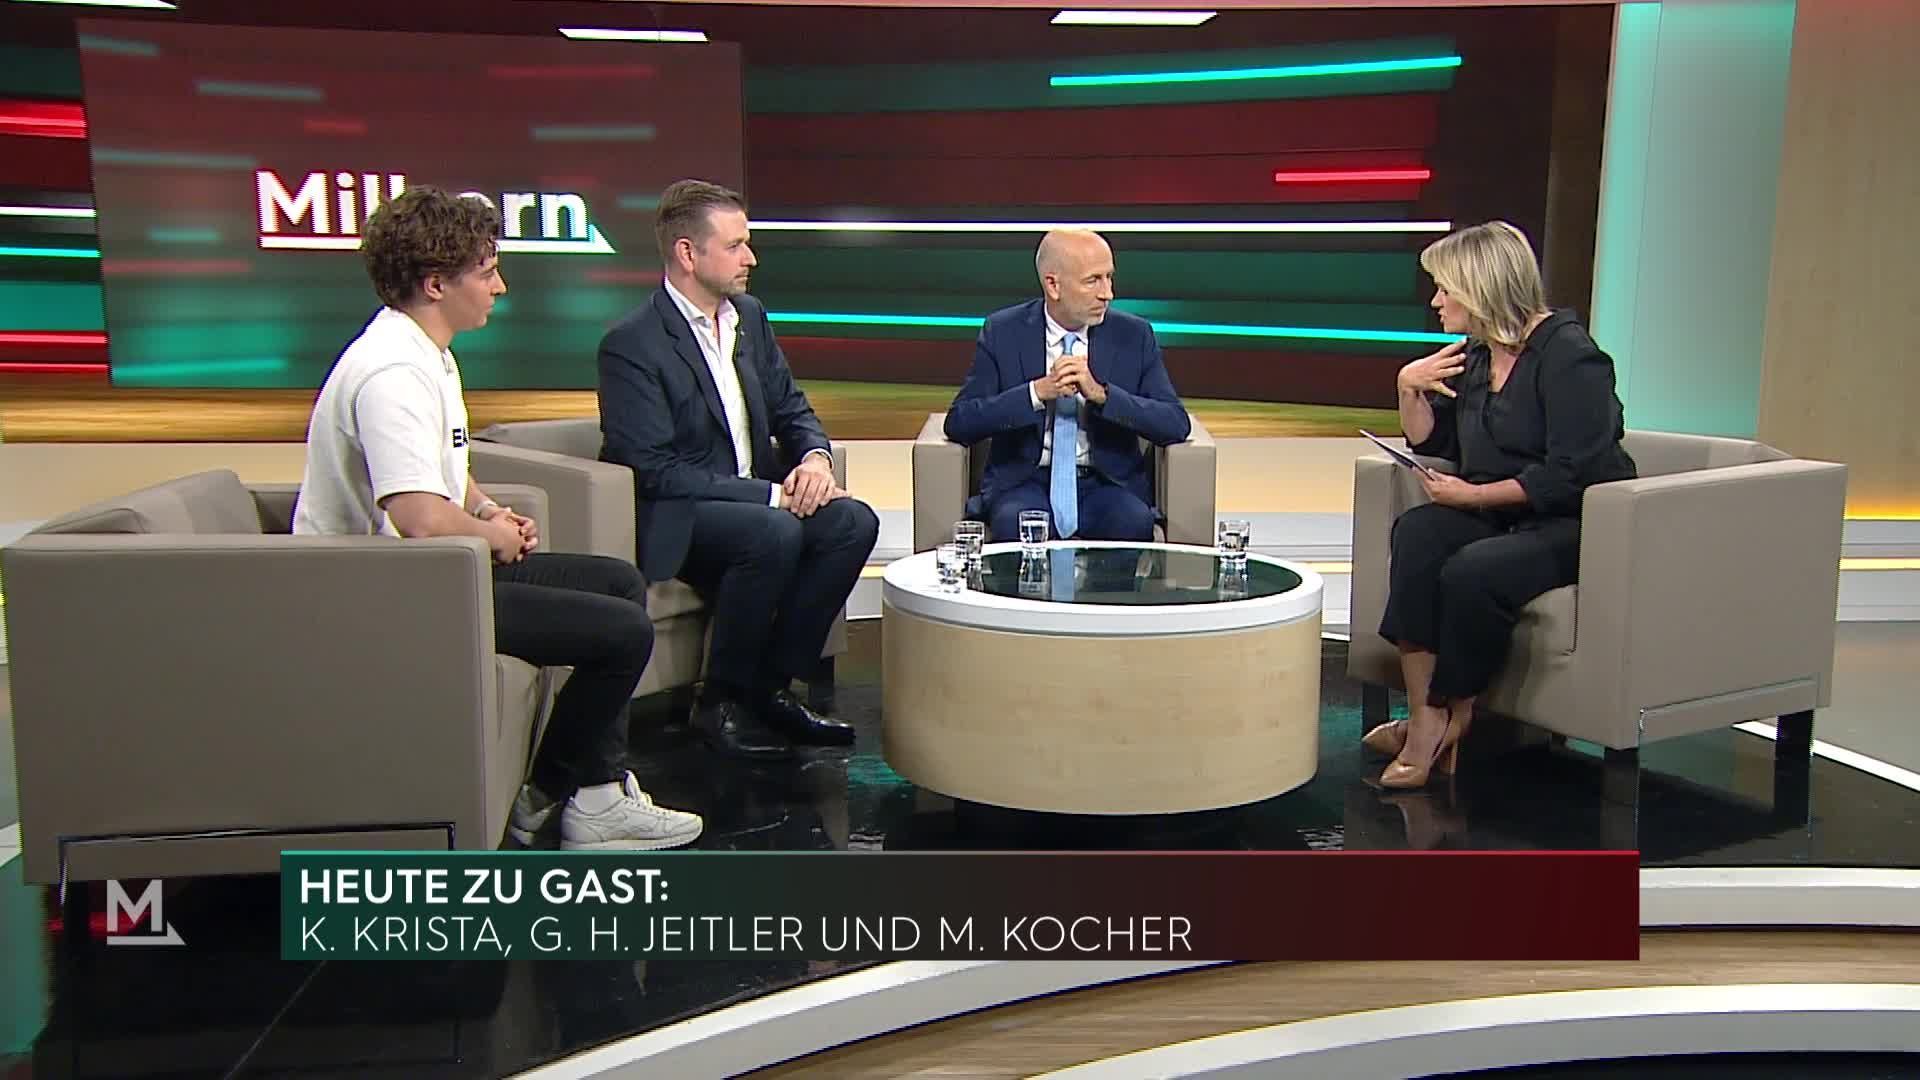 Martin Kocher, Georg Jeitler und Kami Krista im Interview bei Milborn